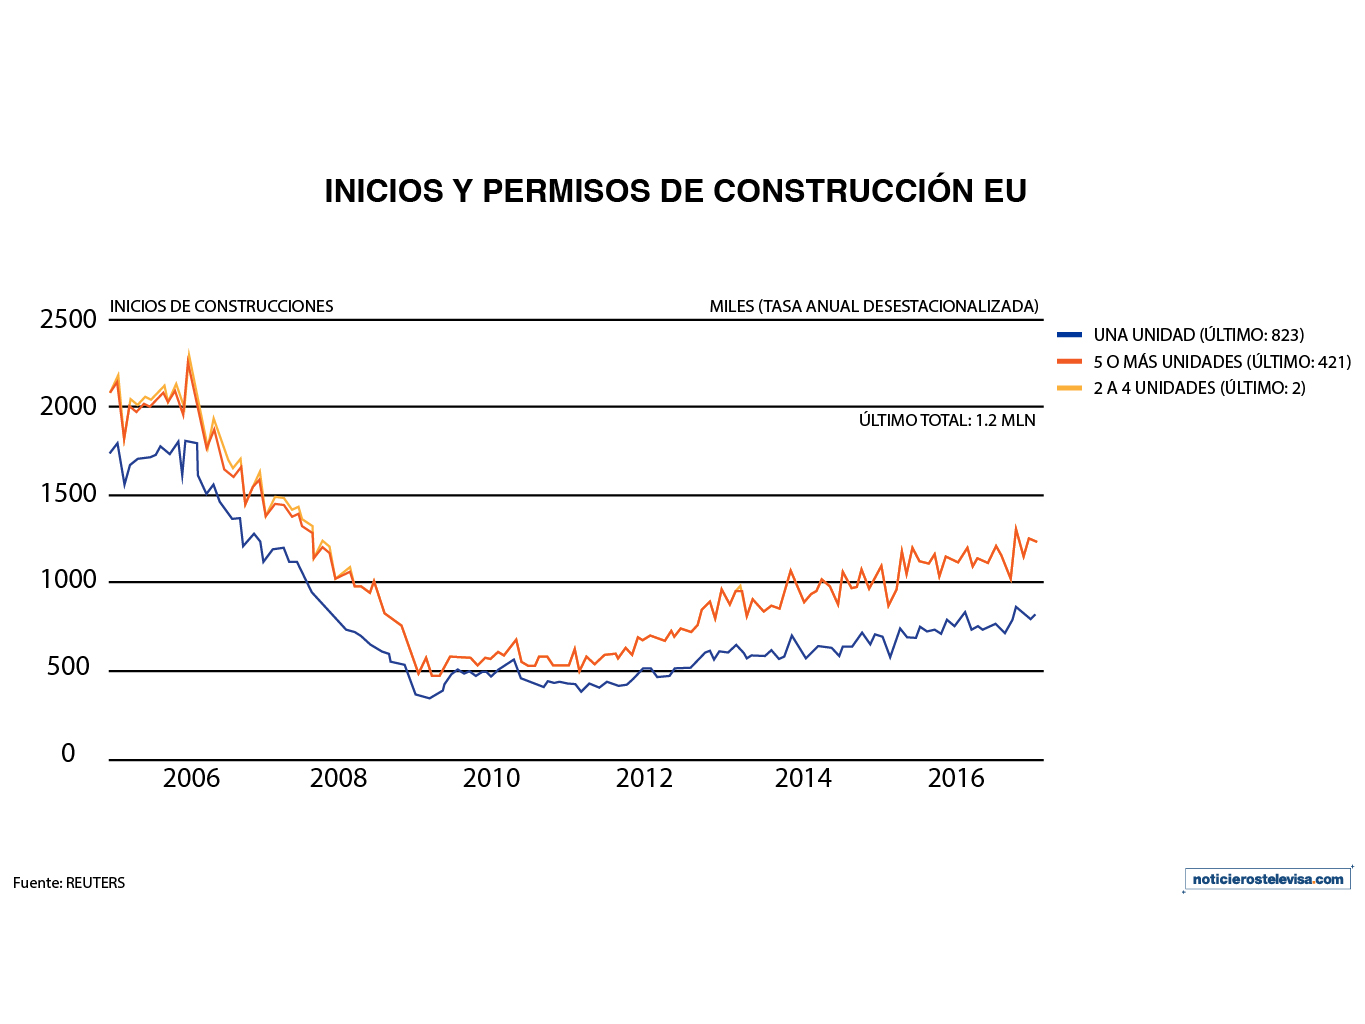 Los inicios de construcciones de casas cayeron 2.6%